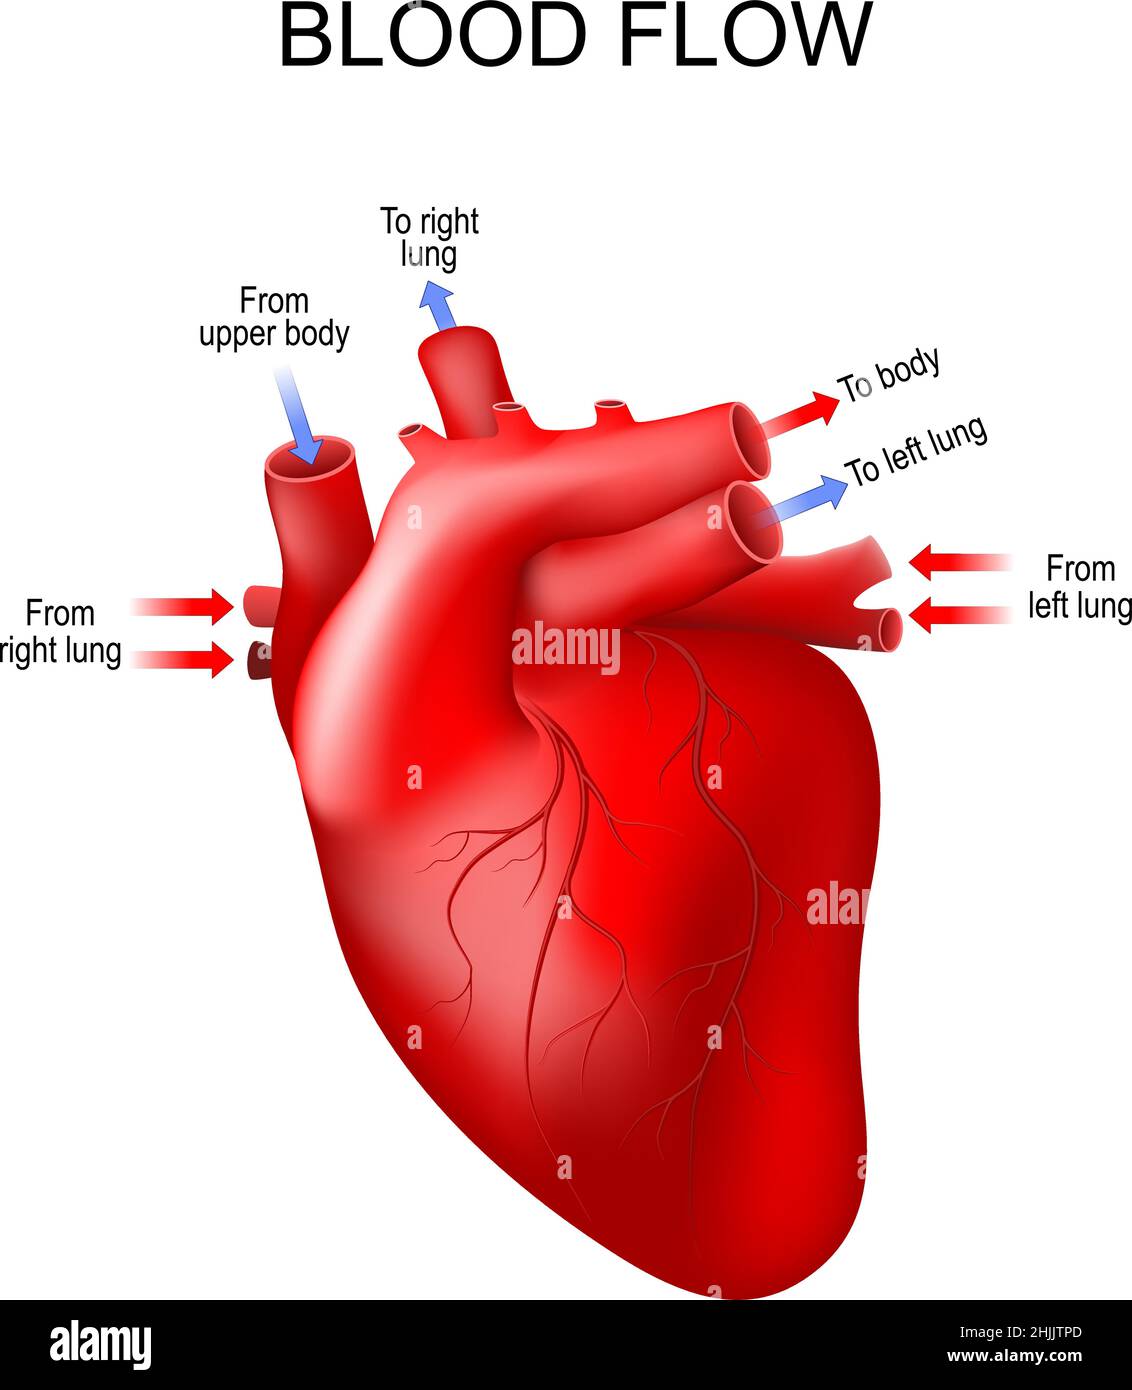 anatomie du cœur humain. les flèches indiquent la direction normale du flux sanguin.Poster vectoriel Illustration de Vecteur